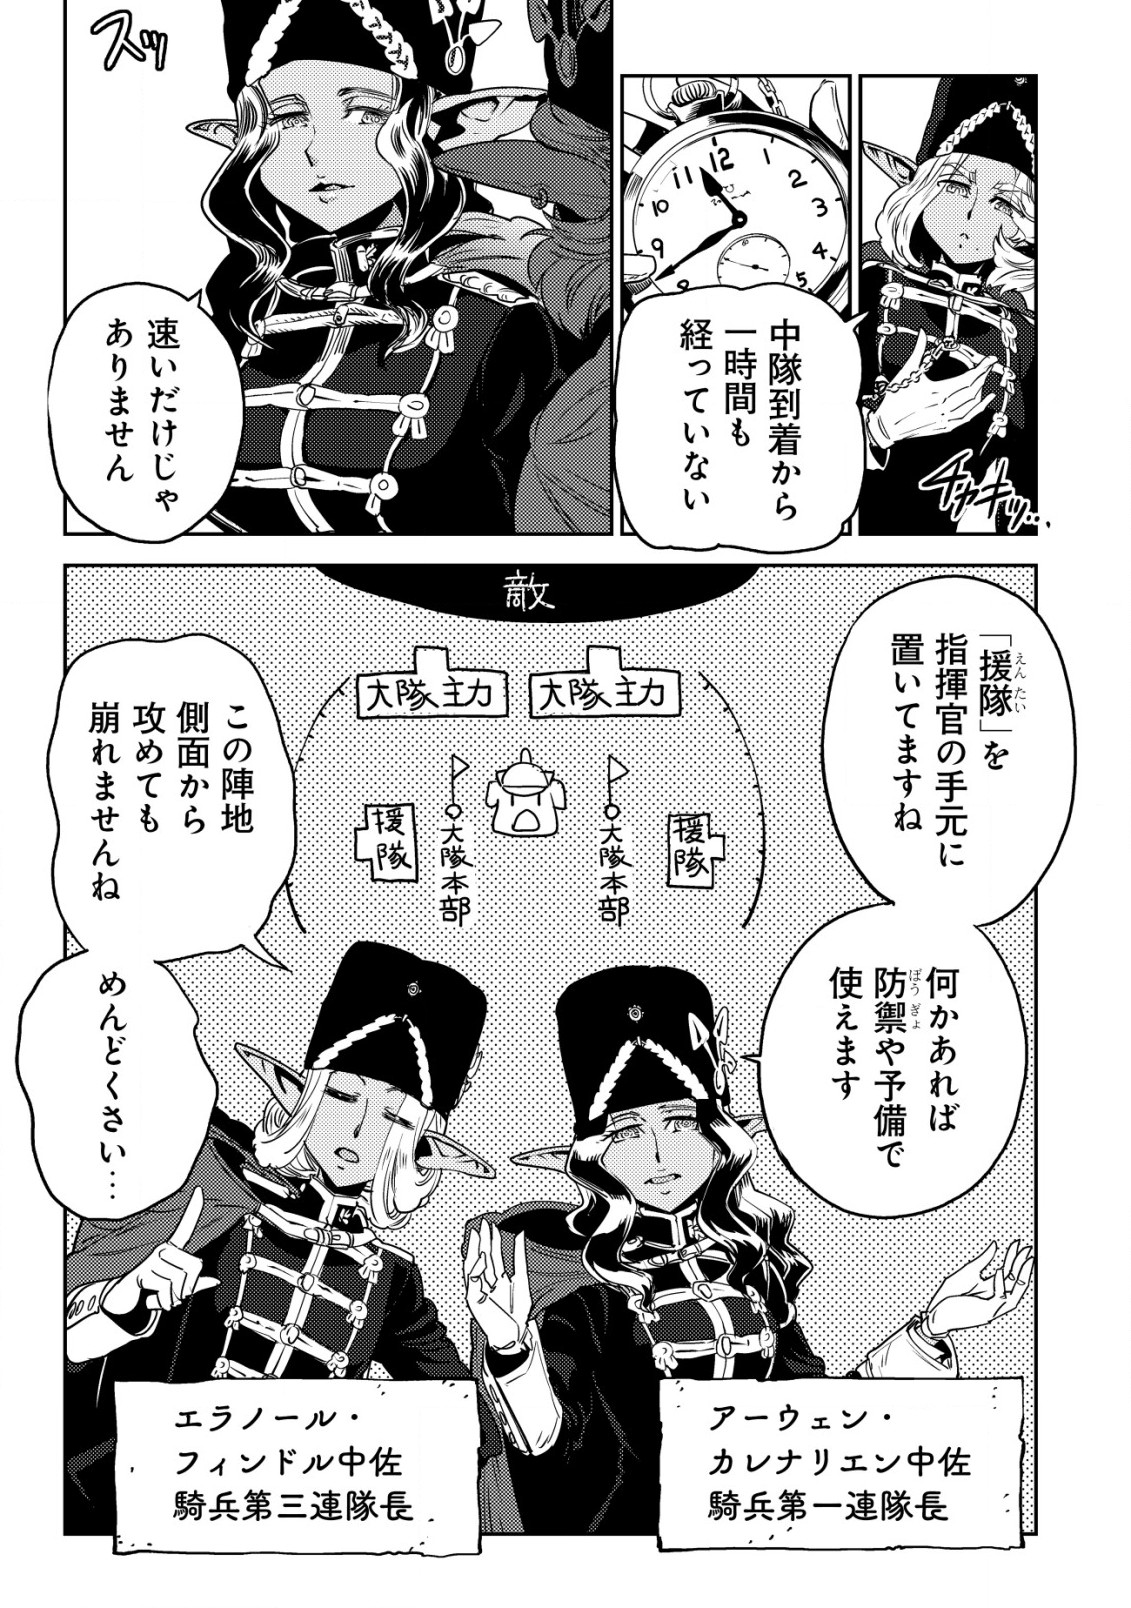 Orcsen Oukokushi – Yaban na Ooku no Kuni wa, Ikanishite Heiwa na Elf no Kuni wo Yakiharau ni Itatta ka - Chapter 4 - Page 10